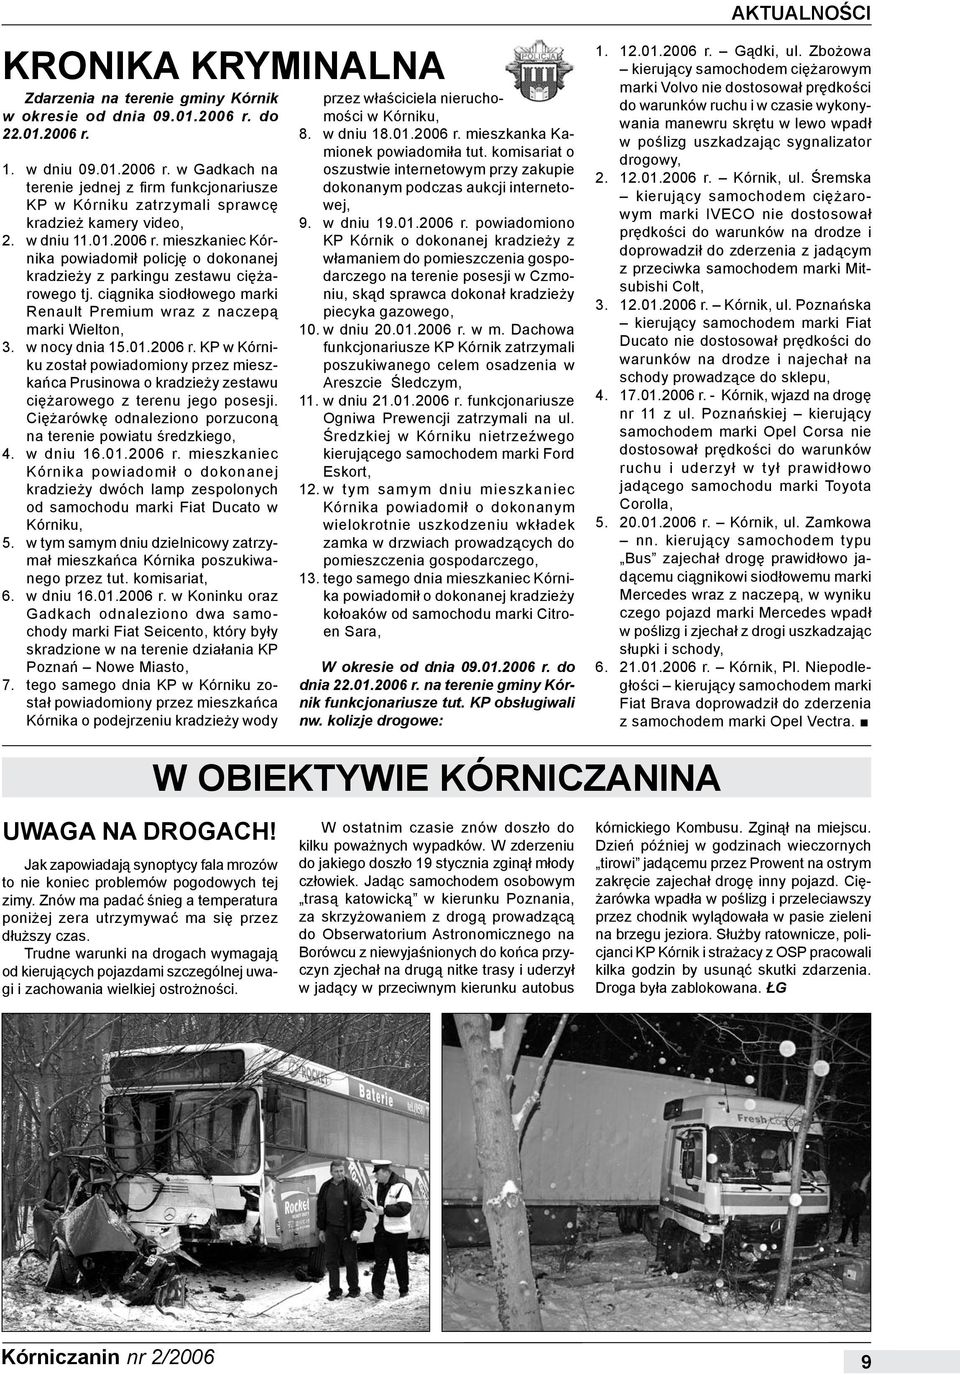 w nocy dnia 15.01.2006 r. KP w Kórniku został powiadomiony przez mieszkańca Prusinowa o kradzieży zestawu ciężarowego z terenu jego posesji.